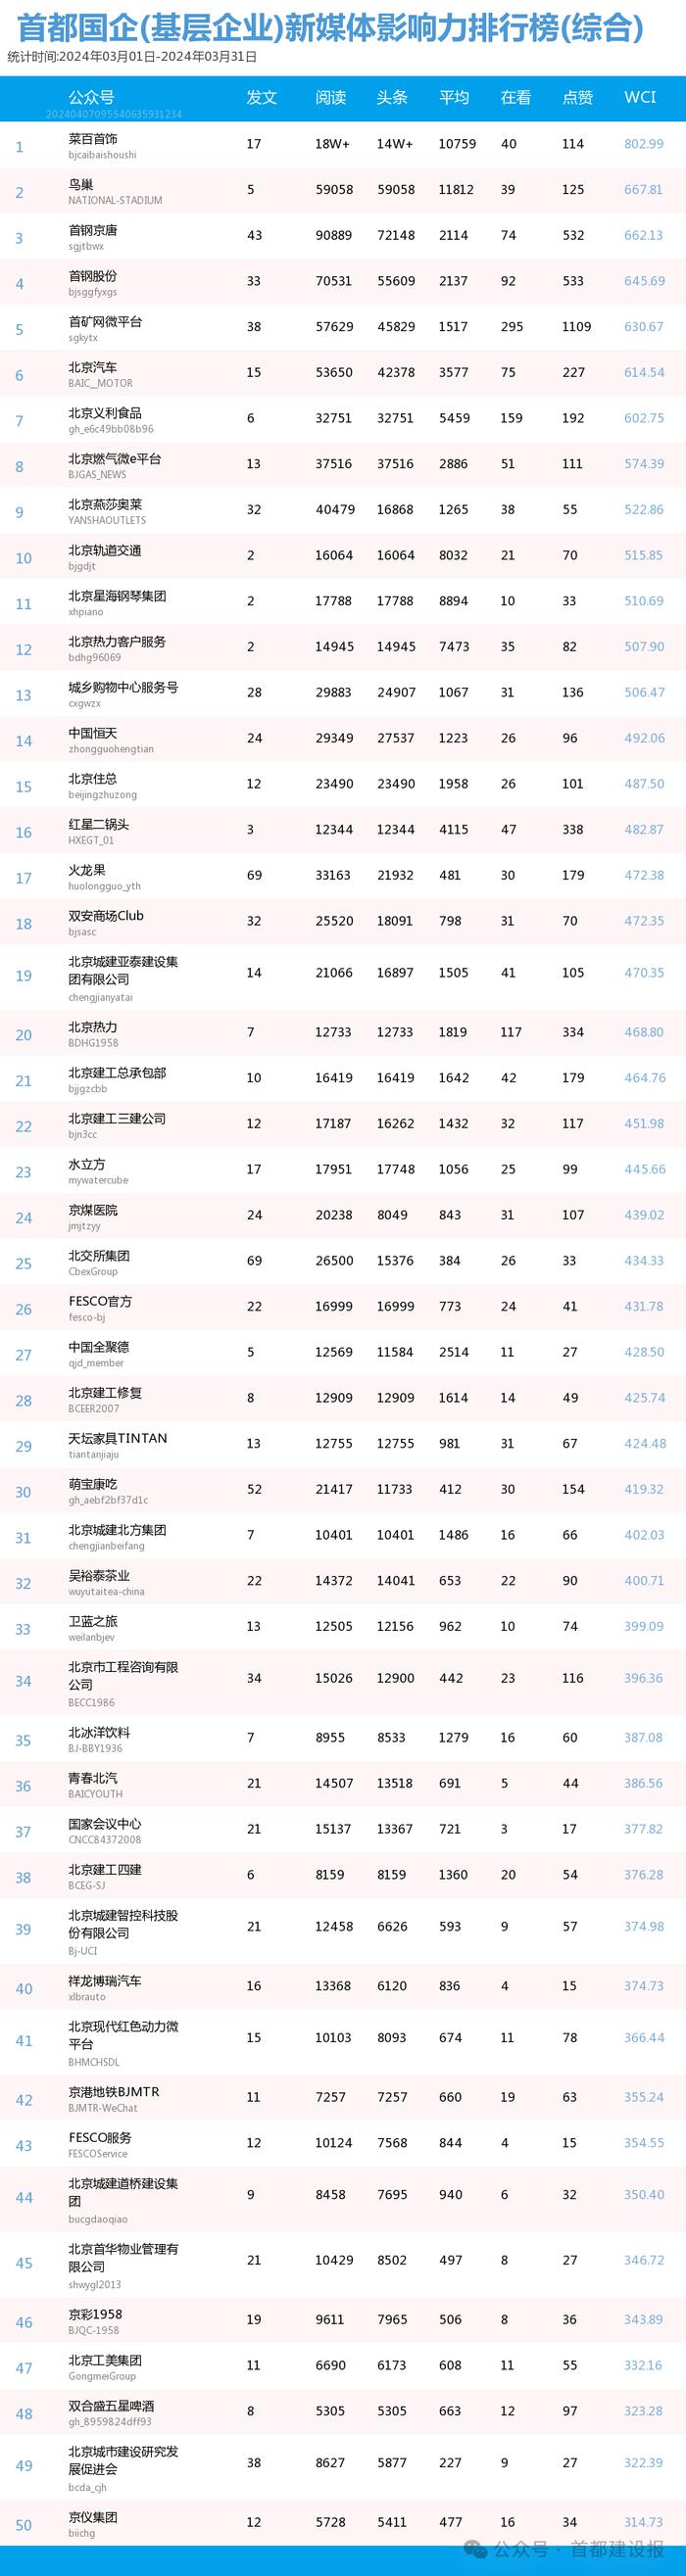 【北京国企新媒体影响力排行榜】3月月榜及周榜(3.31-4.6)第402期